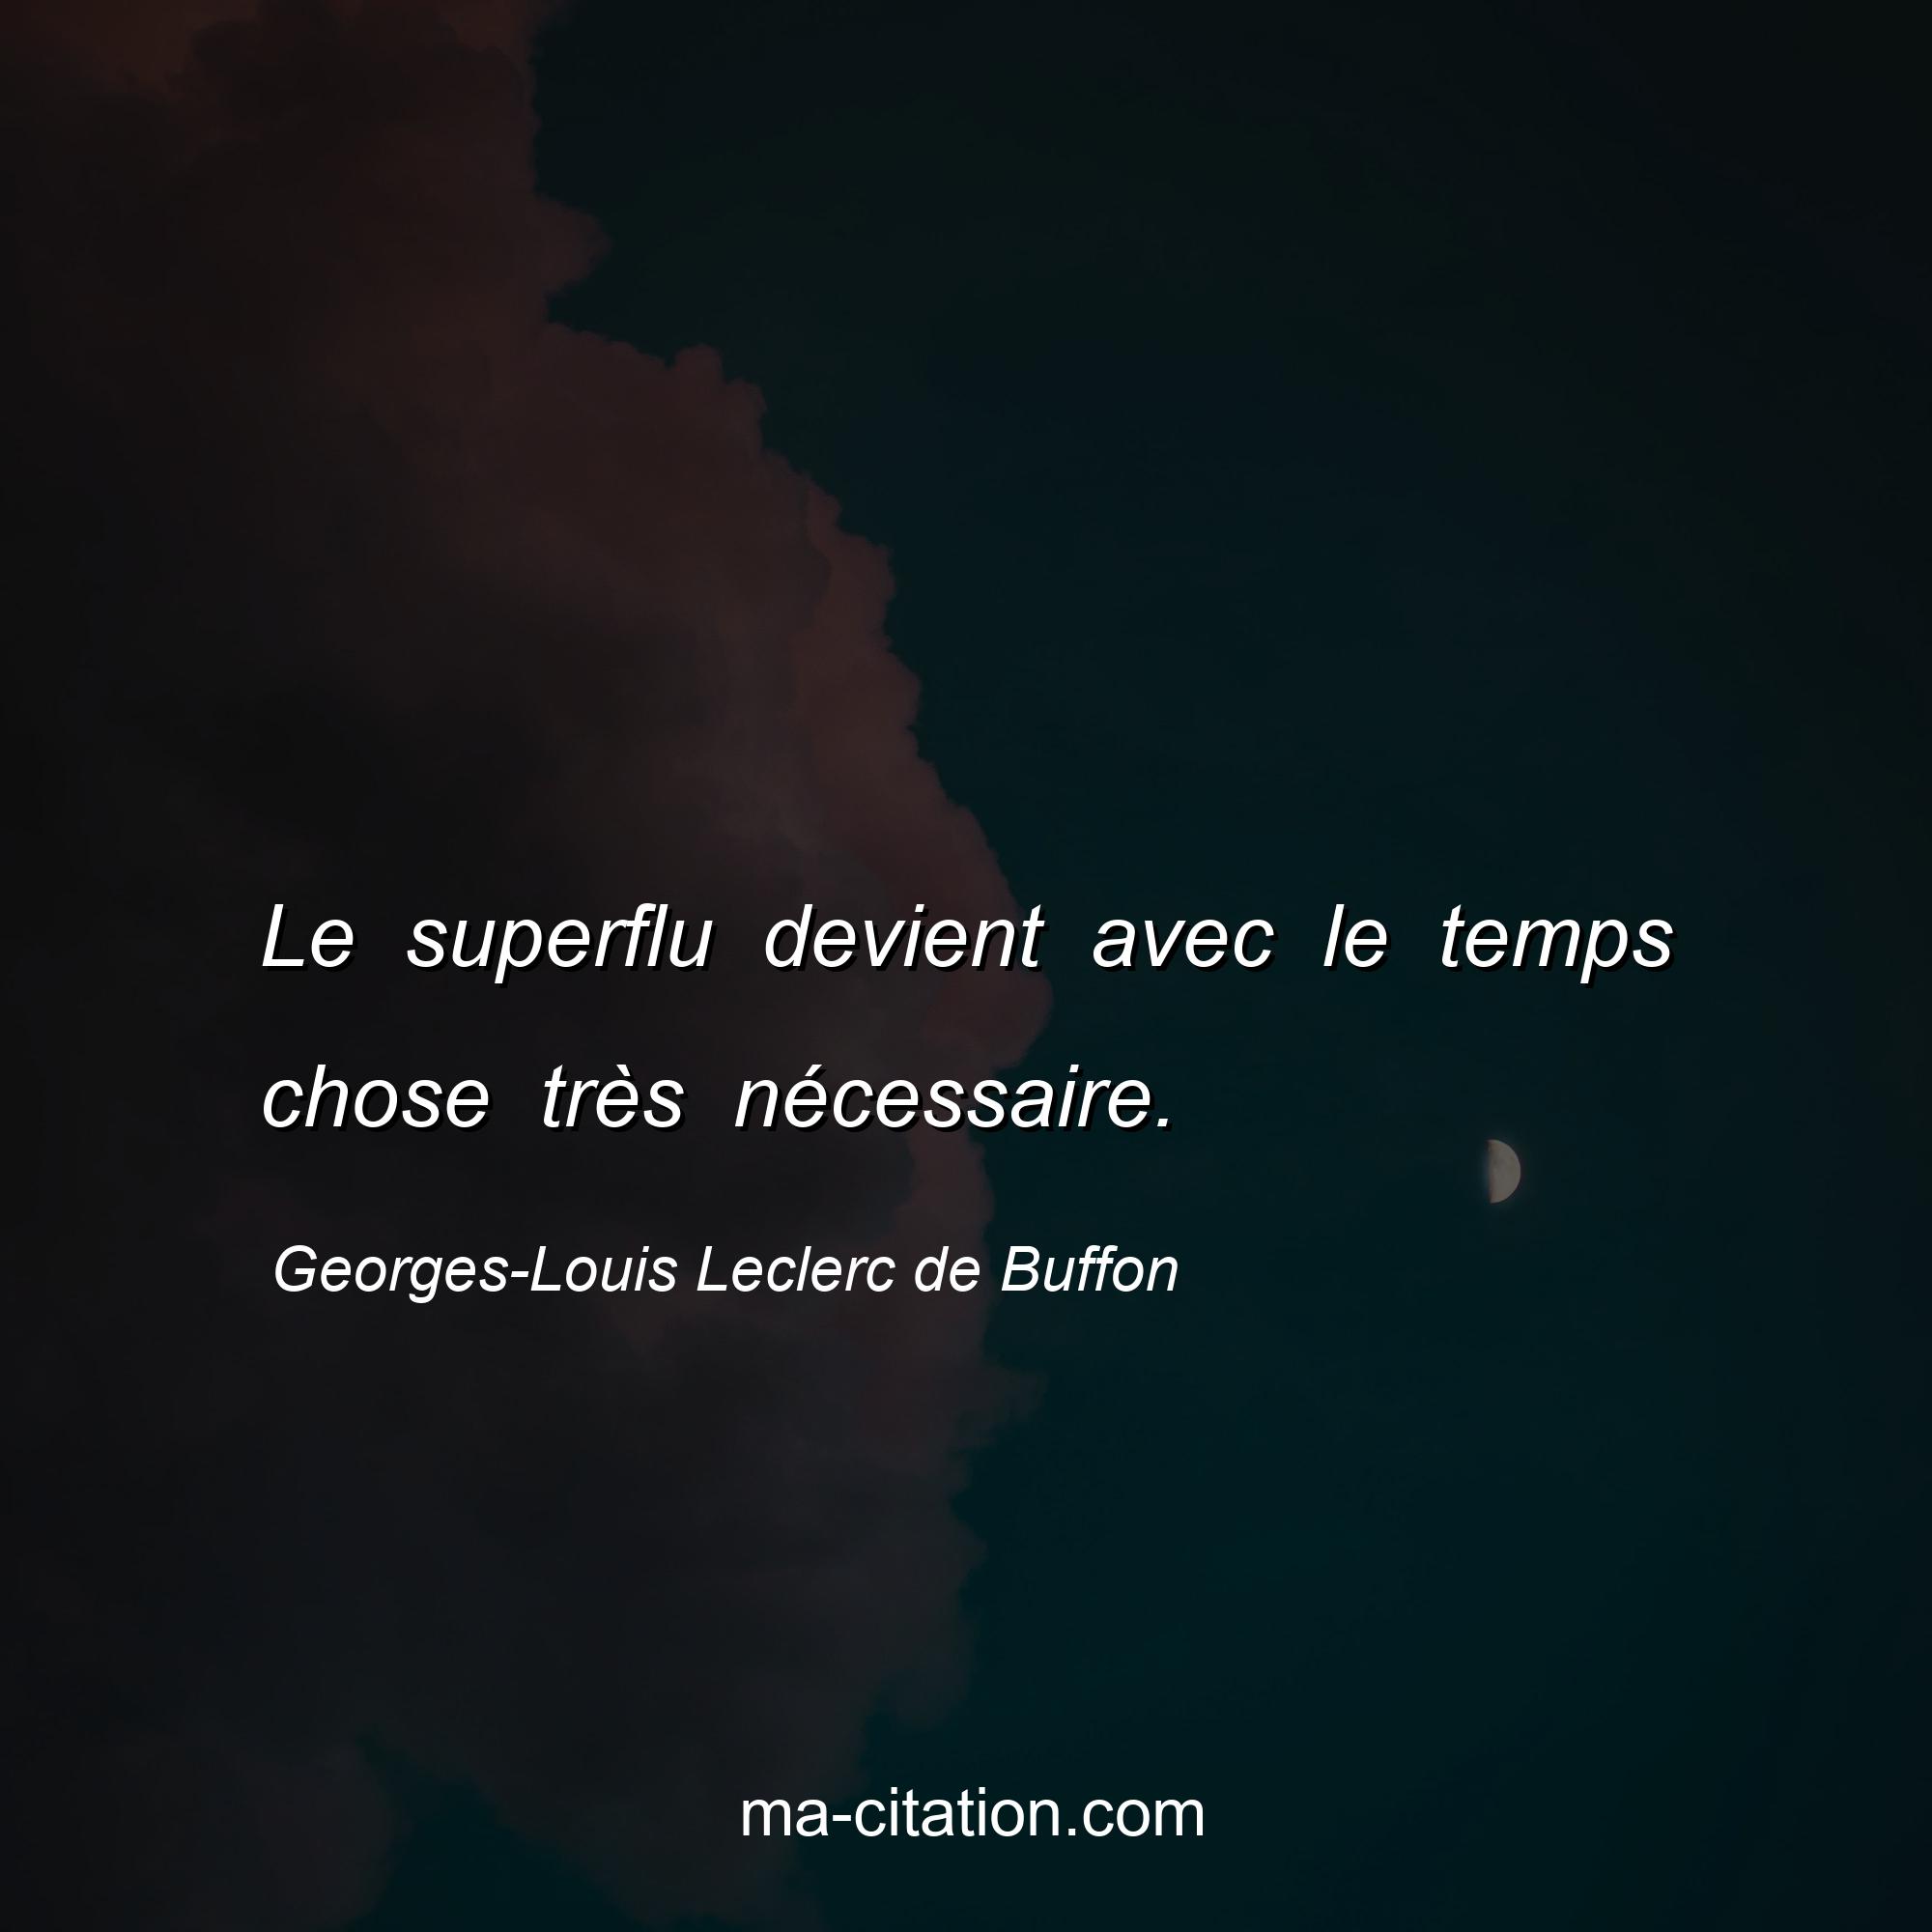 Georges-Louis Leclerc de Buffon : Le superflu devient avec le temps chose très nécessaire.